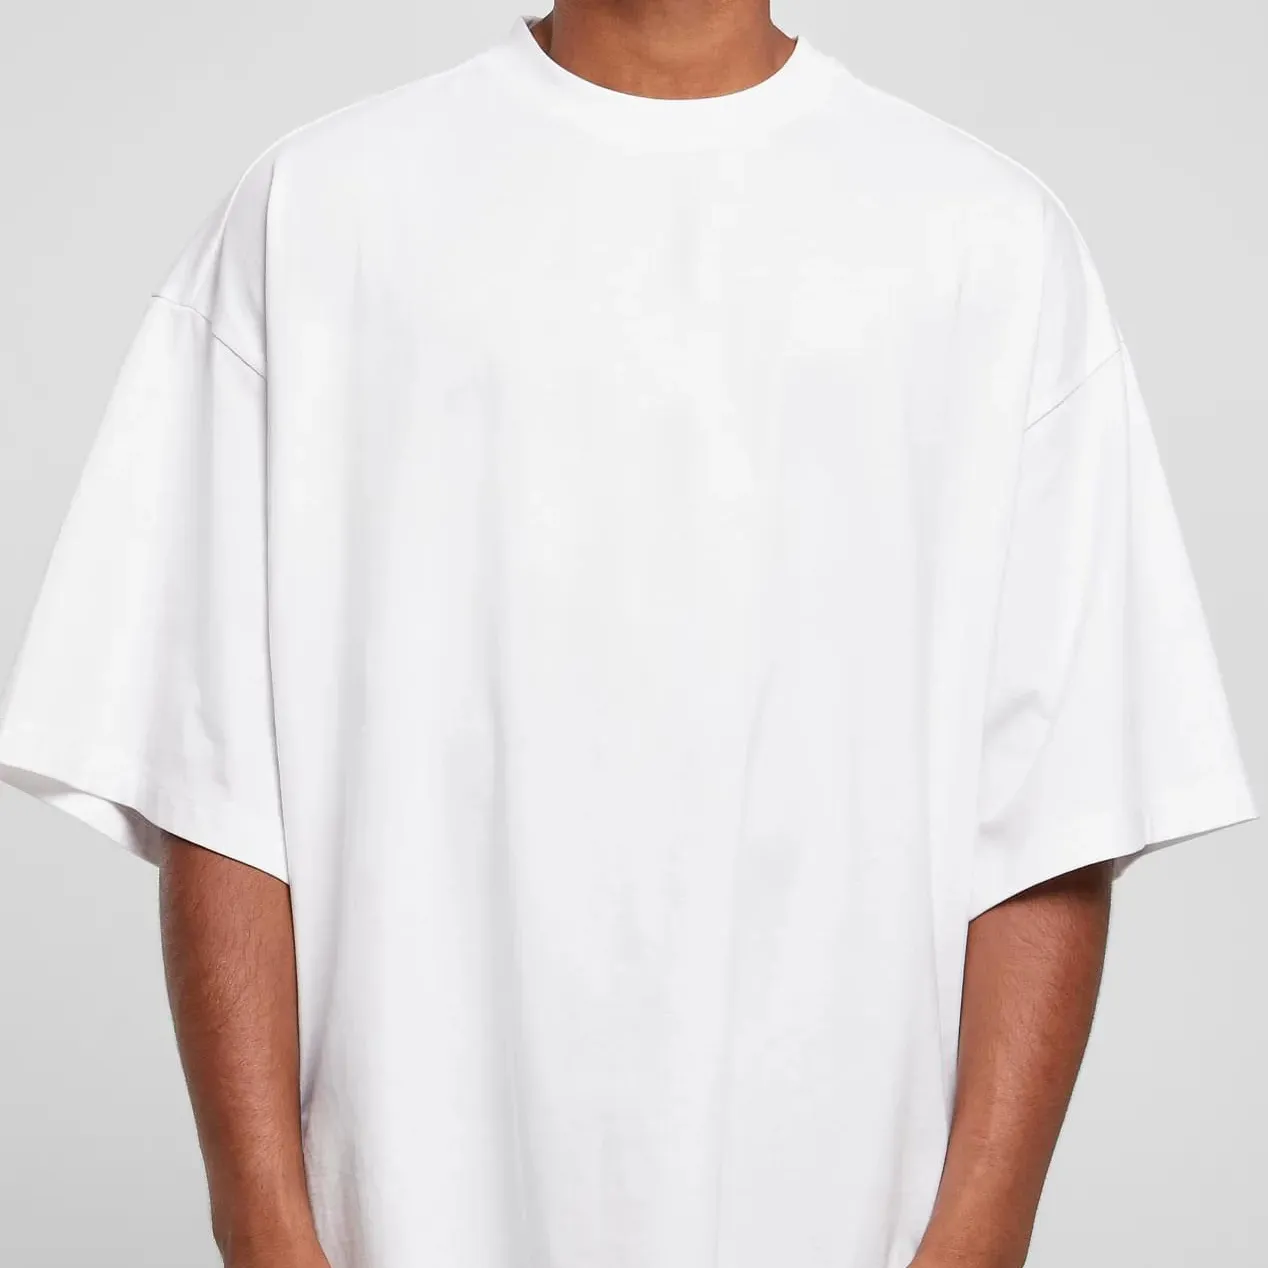 निर्माण पुरुषों की शर्ट उच्च गुणवत्ता वाली स्ट्रीटवियर खाली 250 जीएसएम भारी वजन प्रिंट लोगो टी शर्ट ओएम